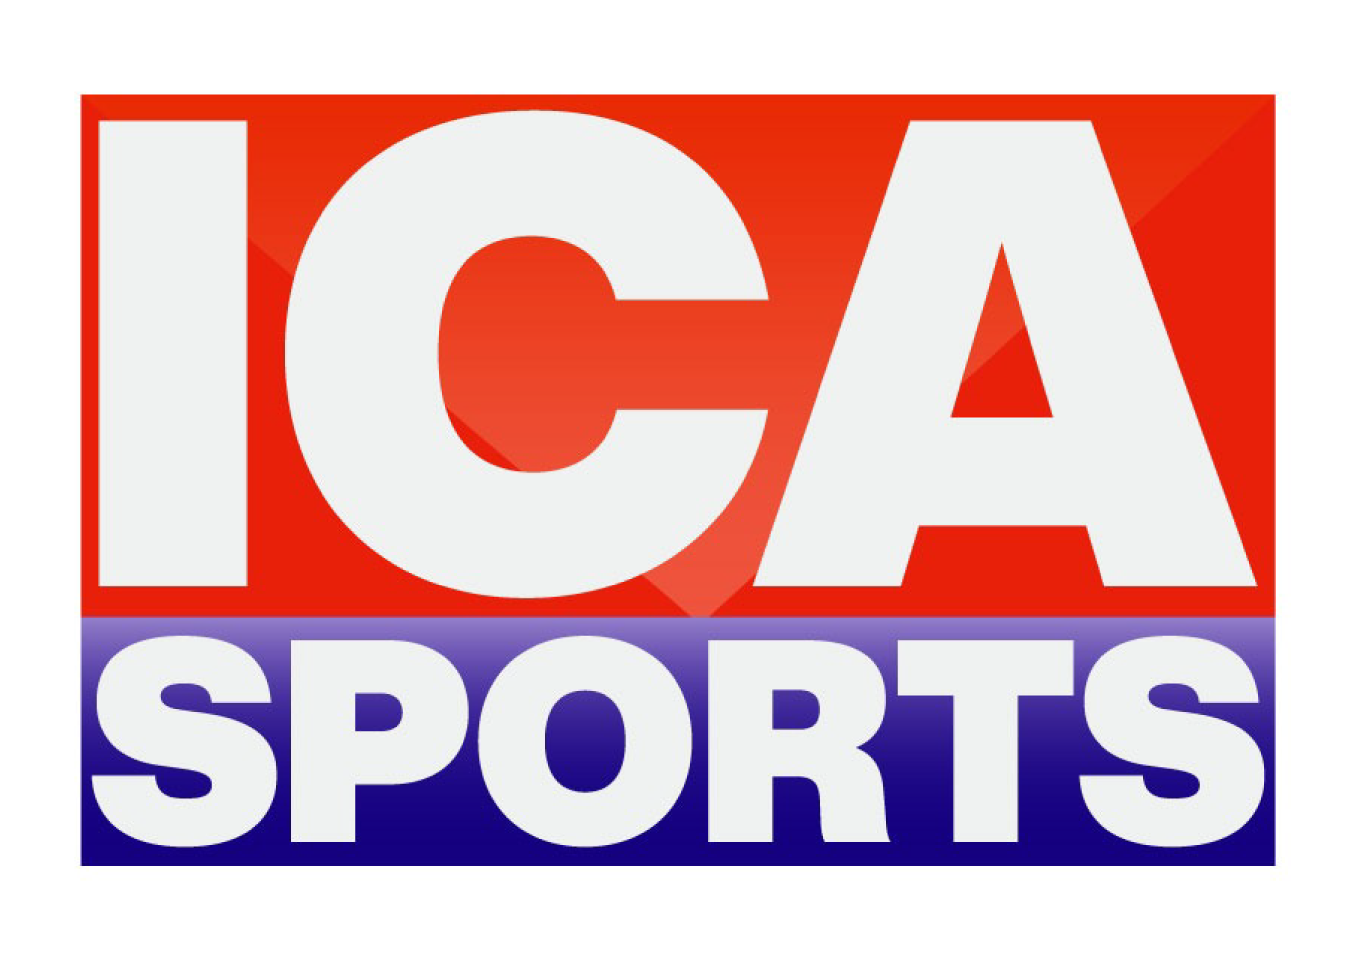 ICA Sport Plus